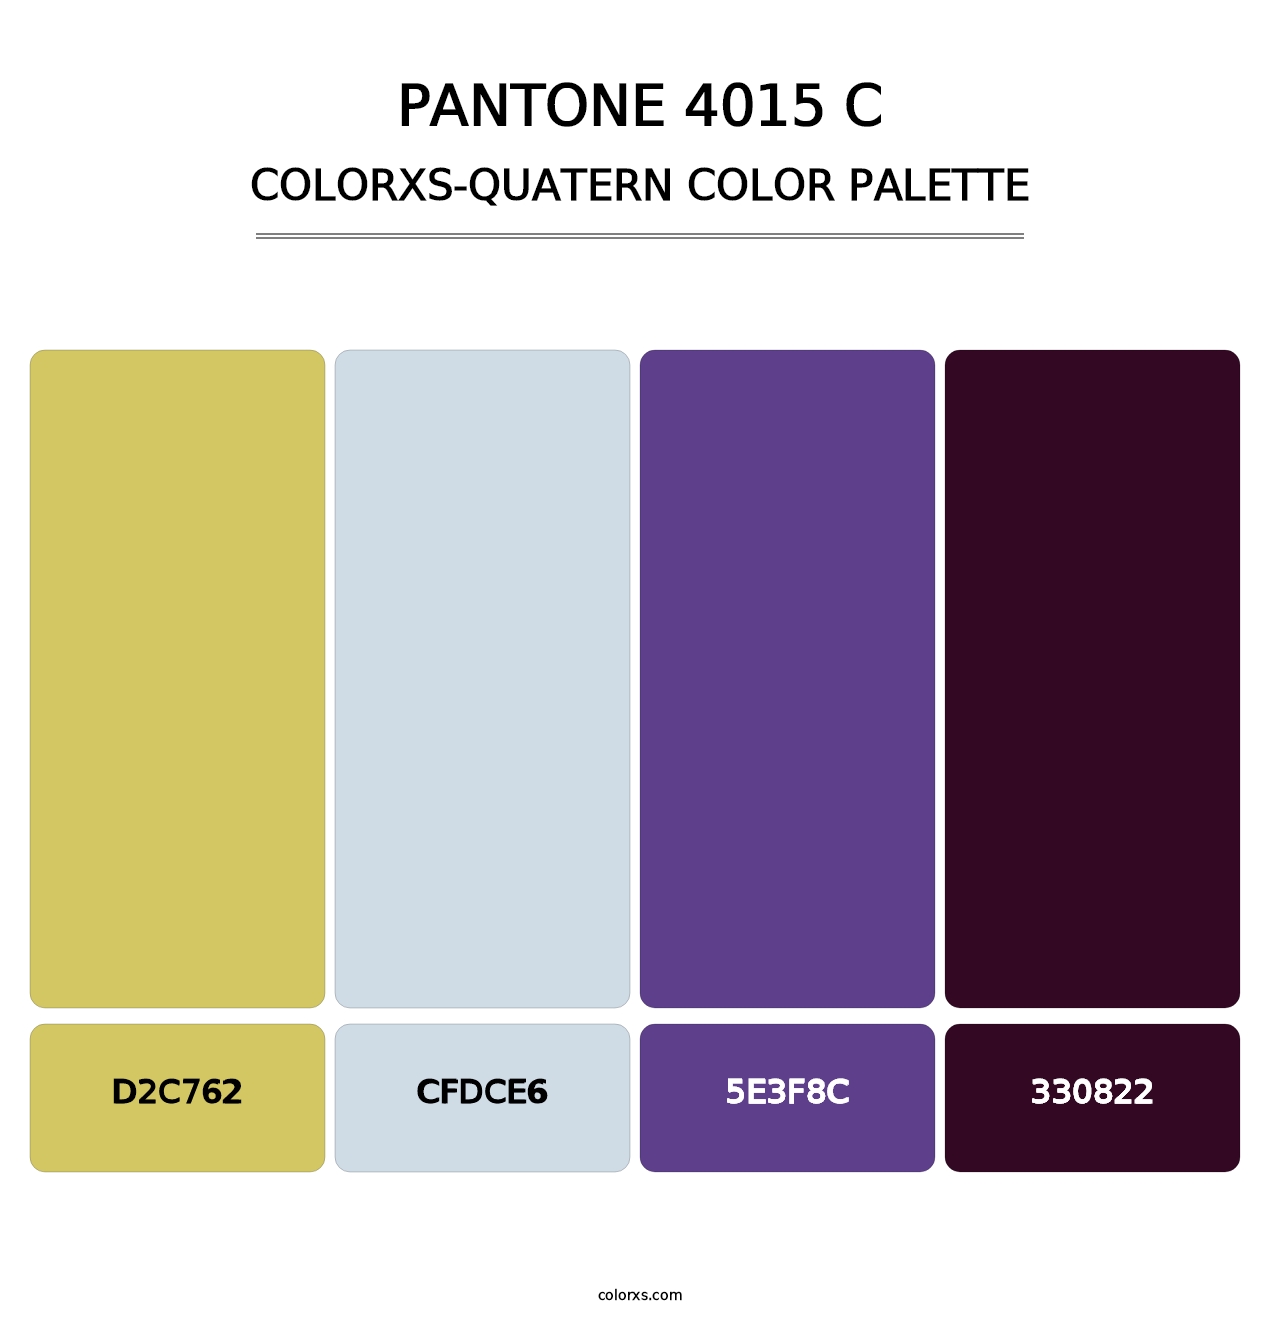 PANTONE 4015 C - Colorxs Quatern Palette